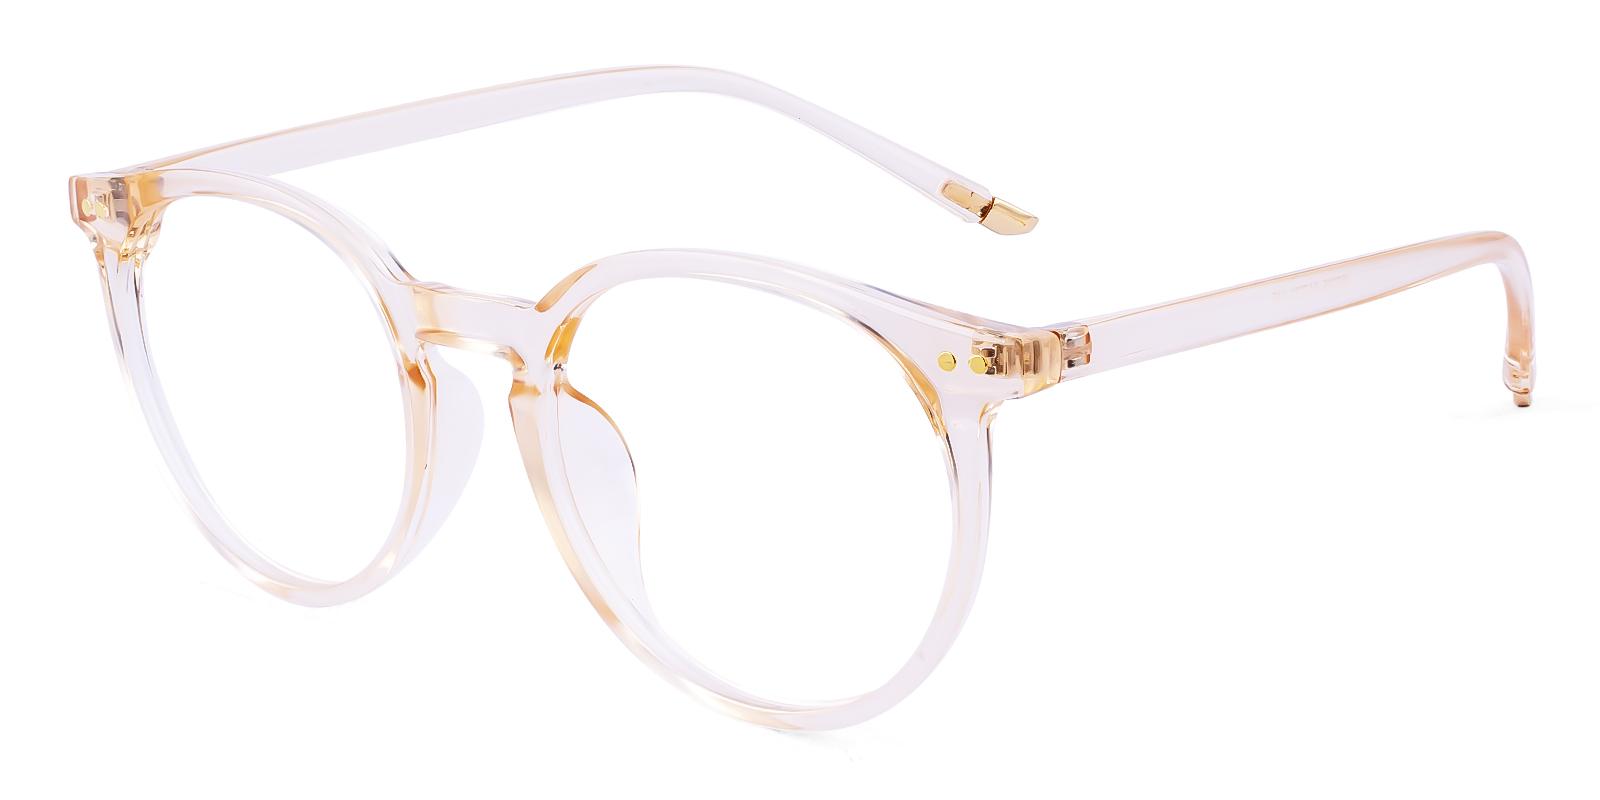 Gunety Orange Plastic Eyeglasses , UniversalBridgeFit Frames from ABBE Glasses